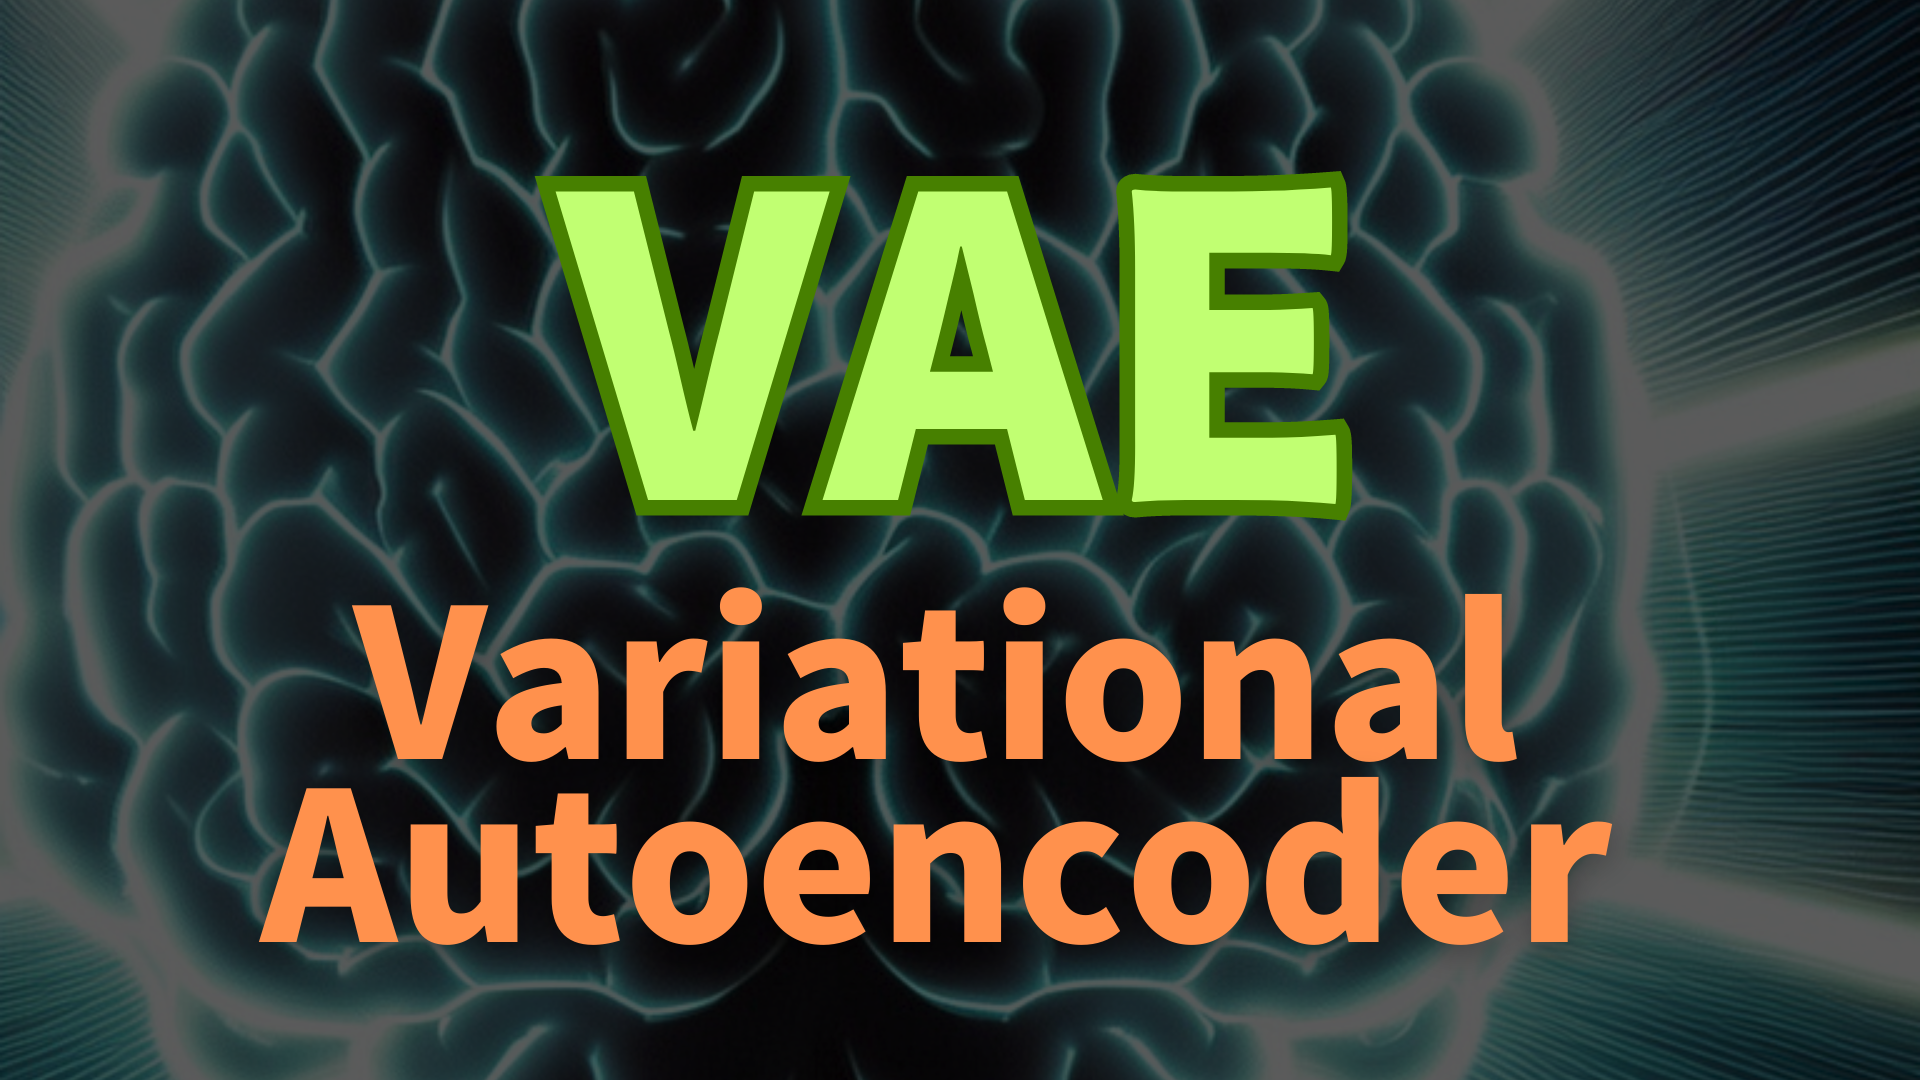 VAEs (Variational Autoencoders)